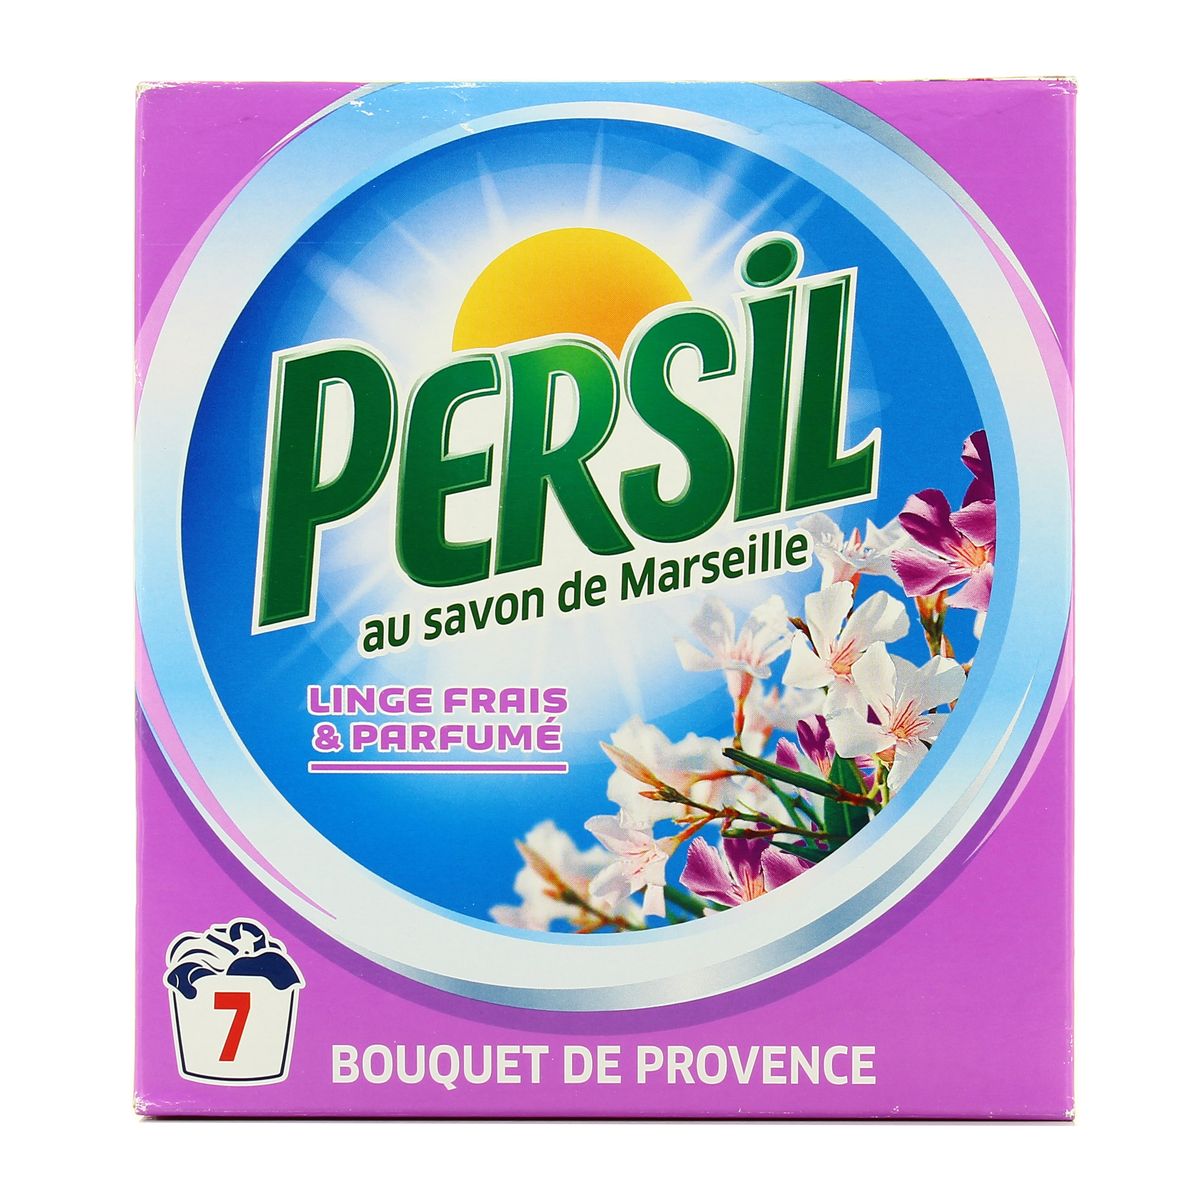 Lessive en poudre persil au savon de Marseille